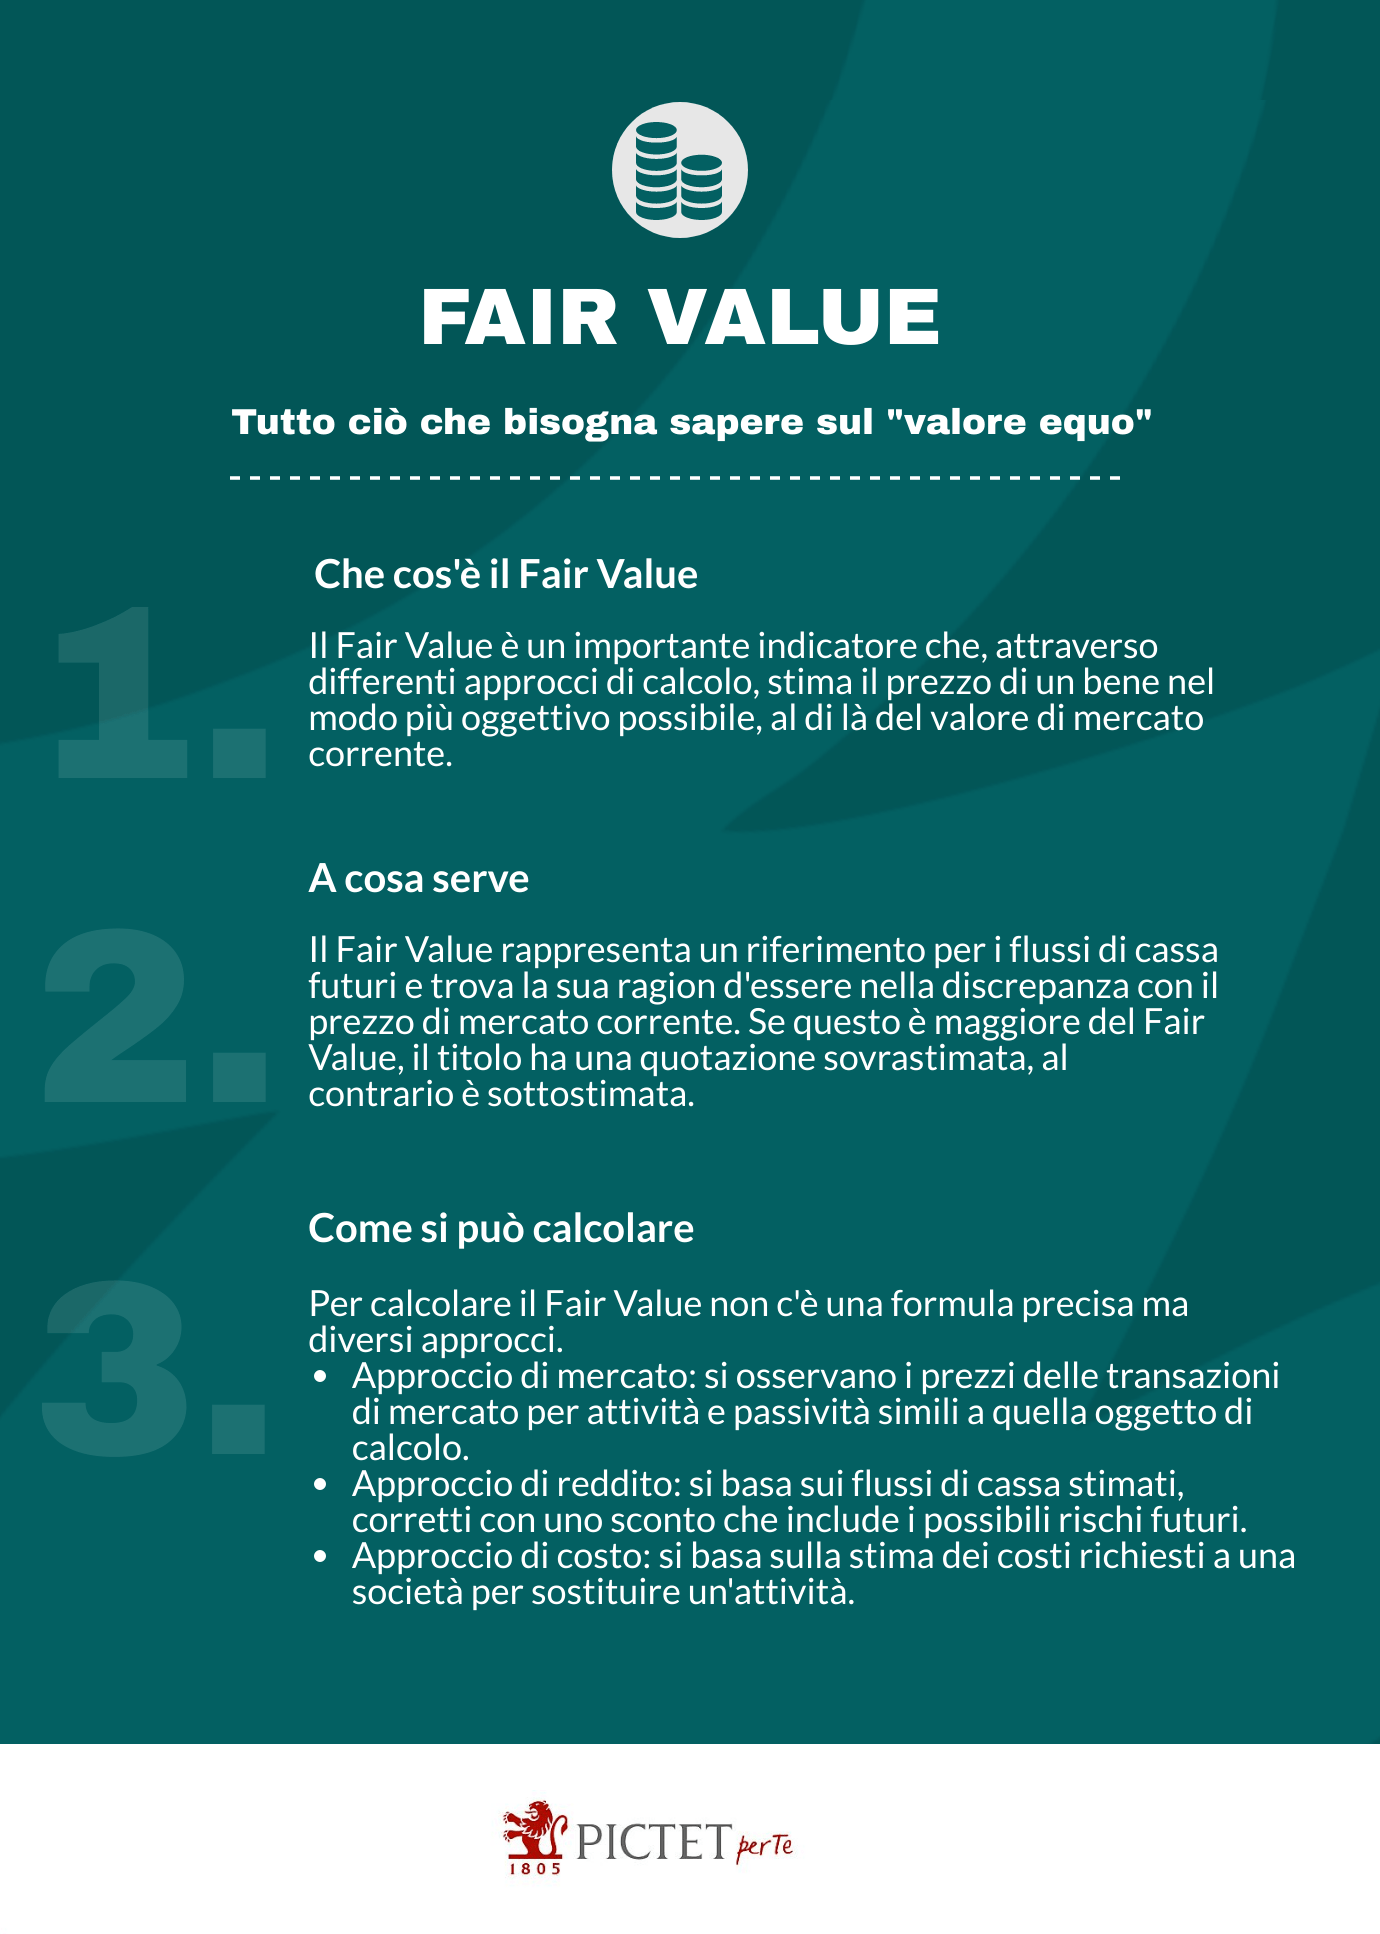 Pictet_GuidaFinanza_fair-value_20210628